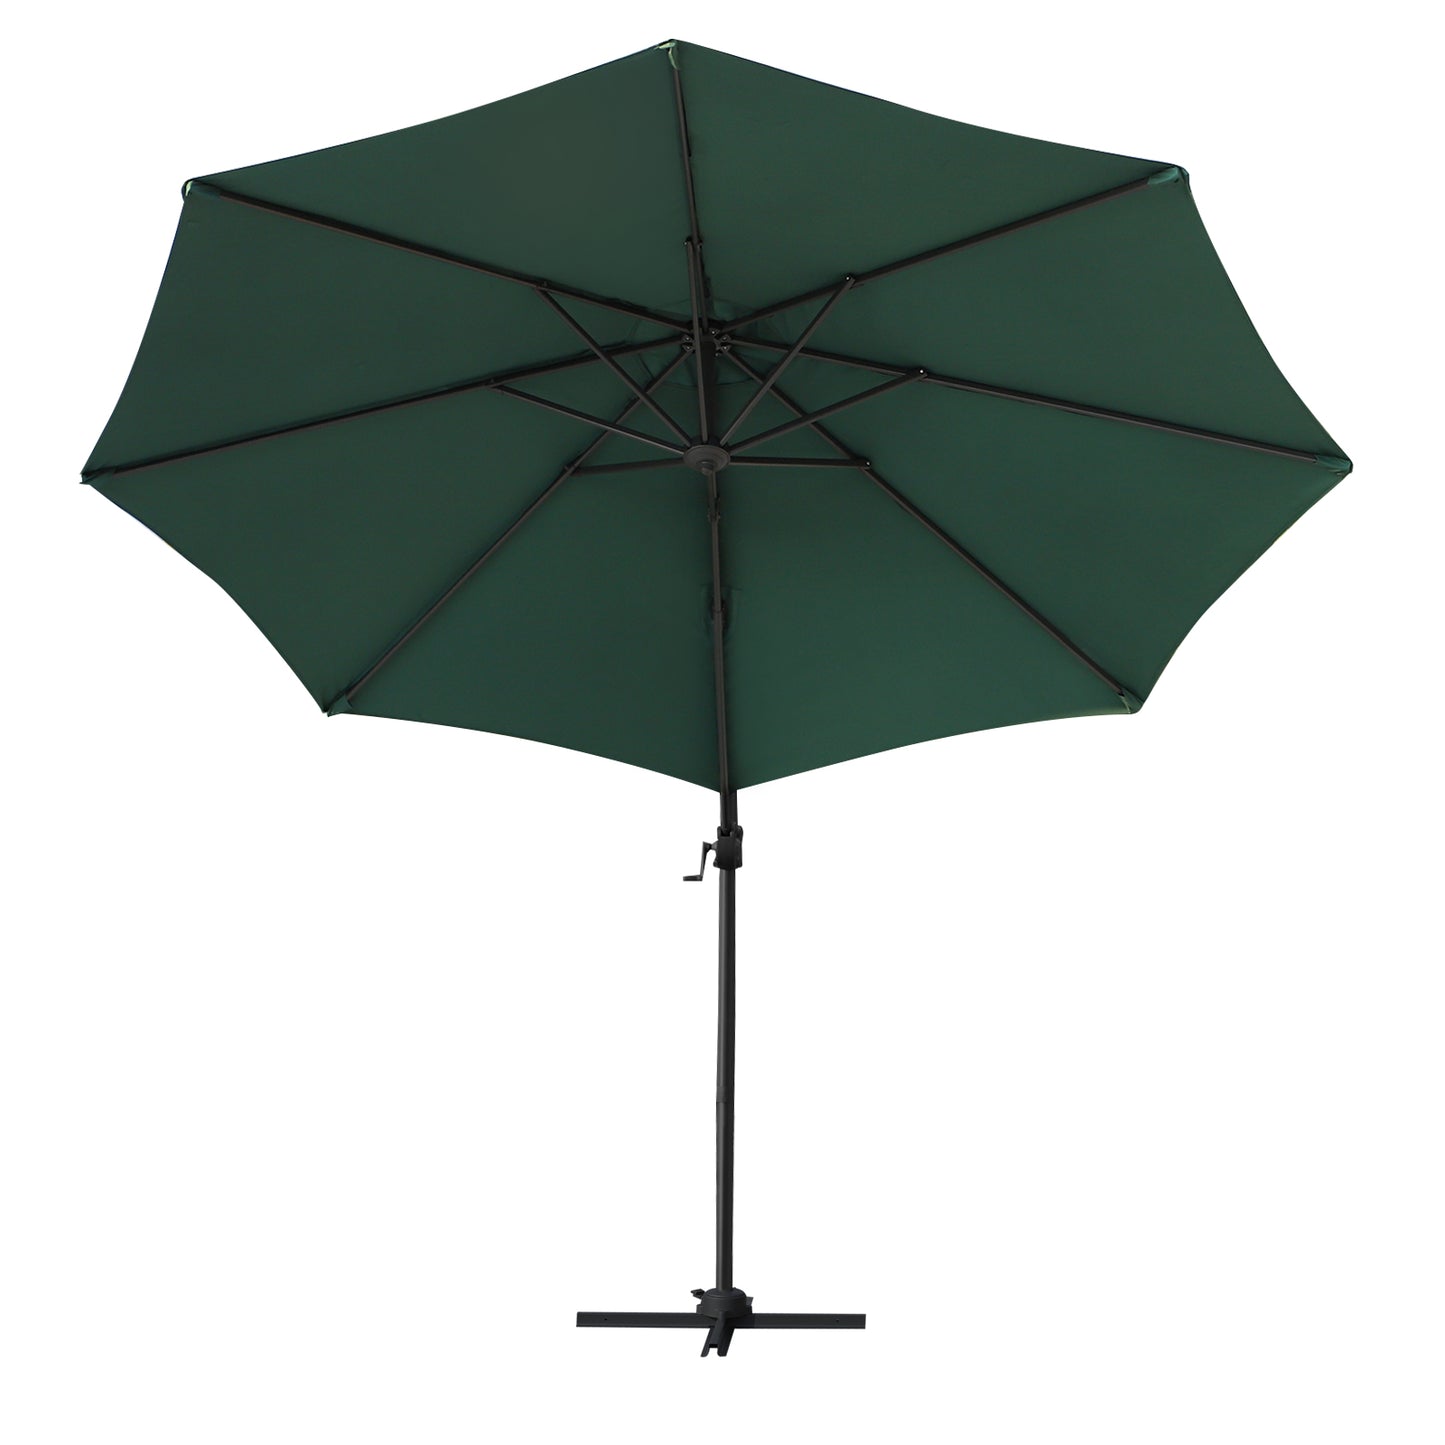 Outsunny Patio Roma Parasol Umbrella Cantilever Hanging Sun Shade Canopy Green